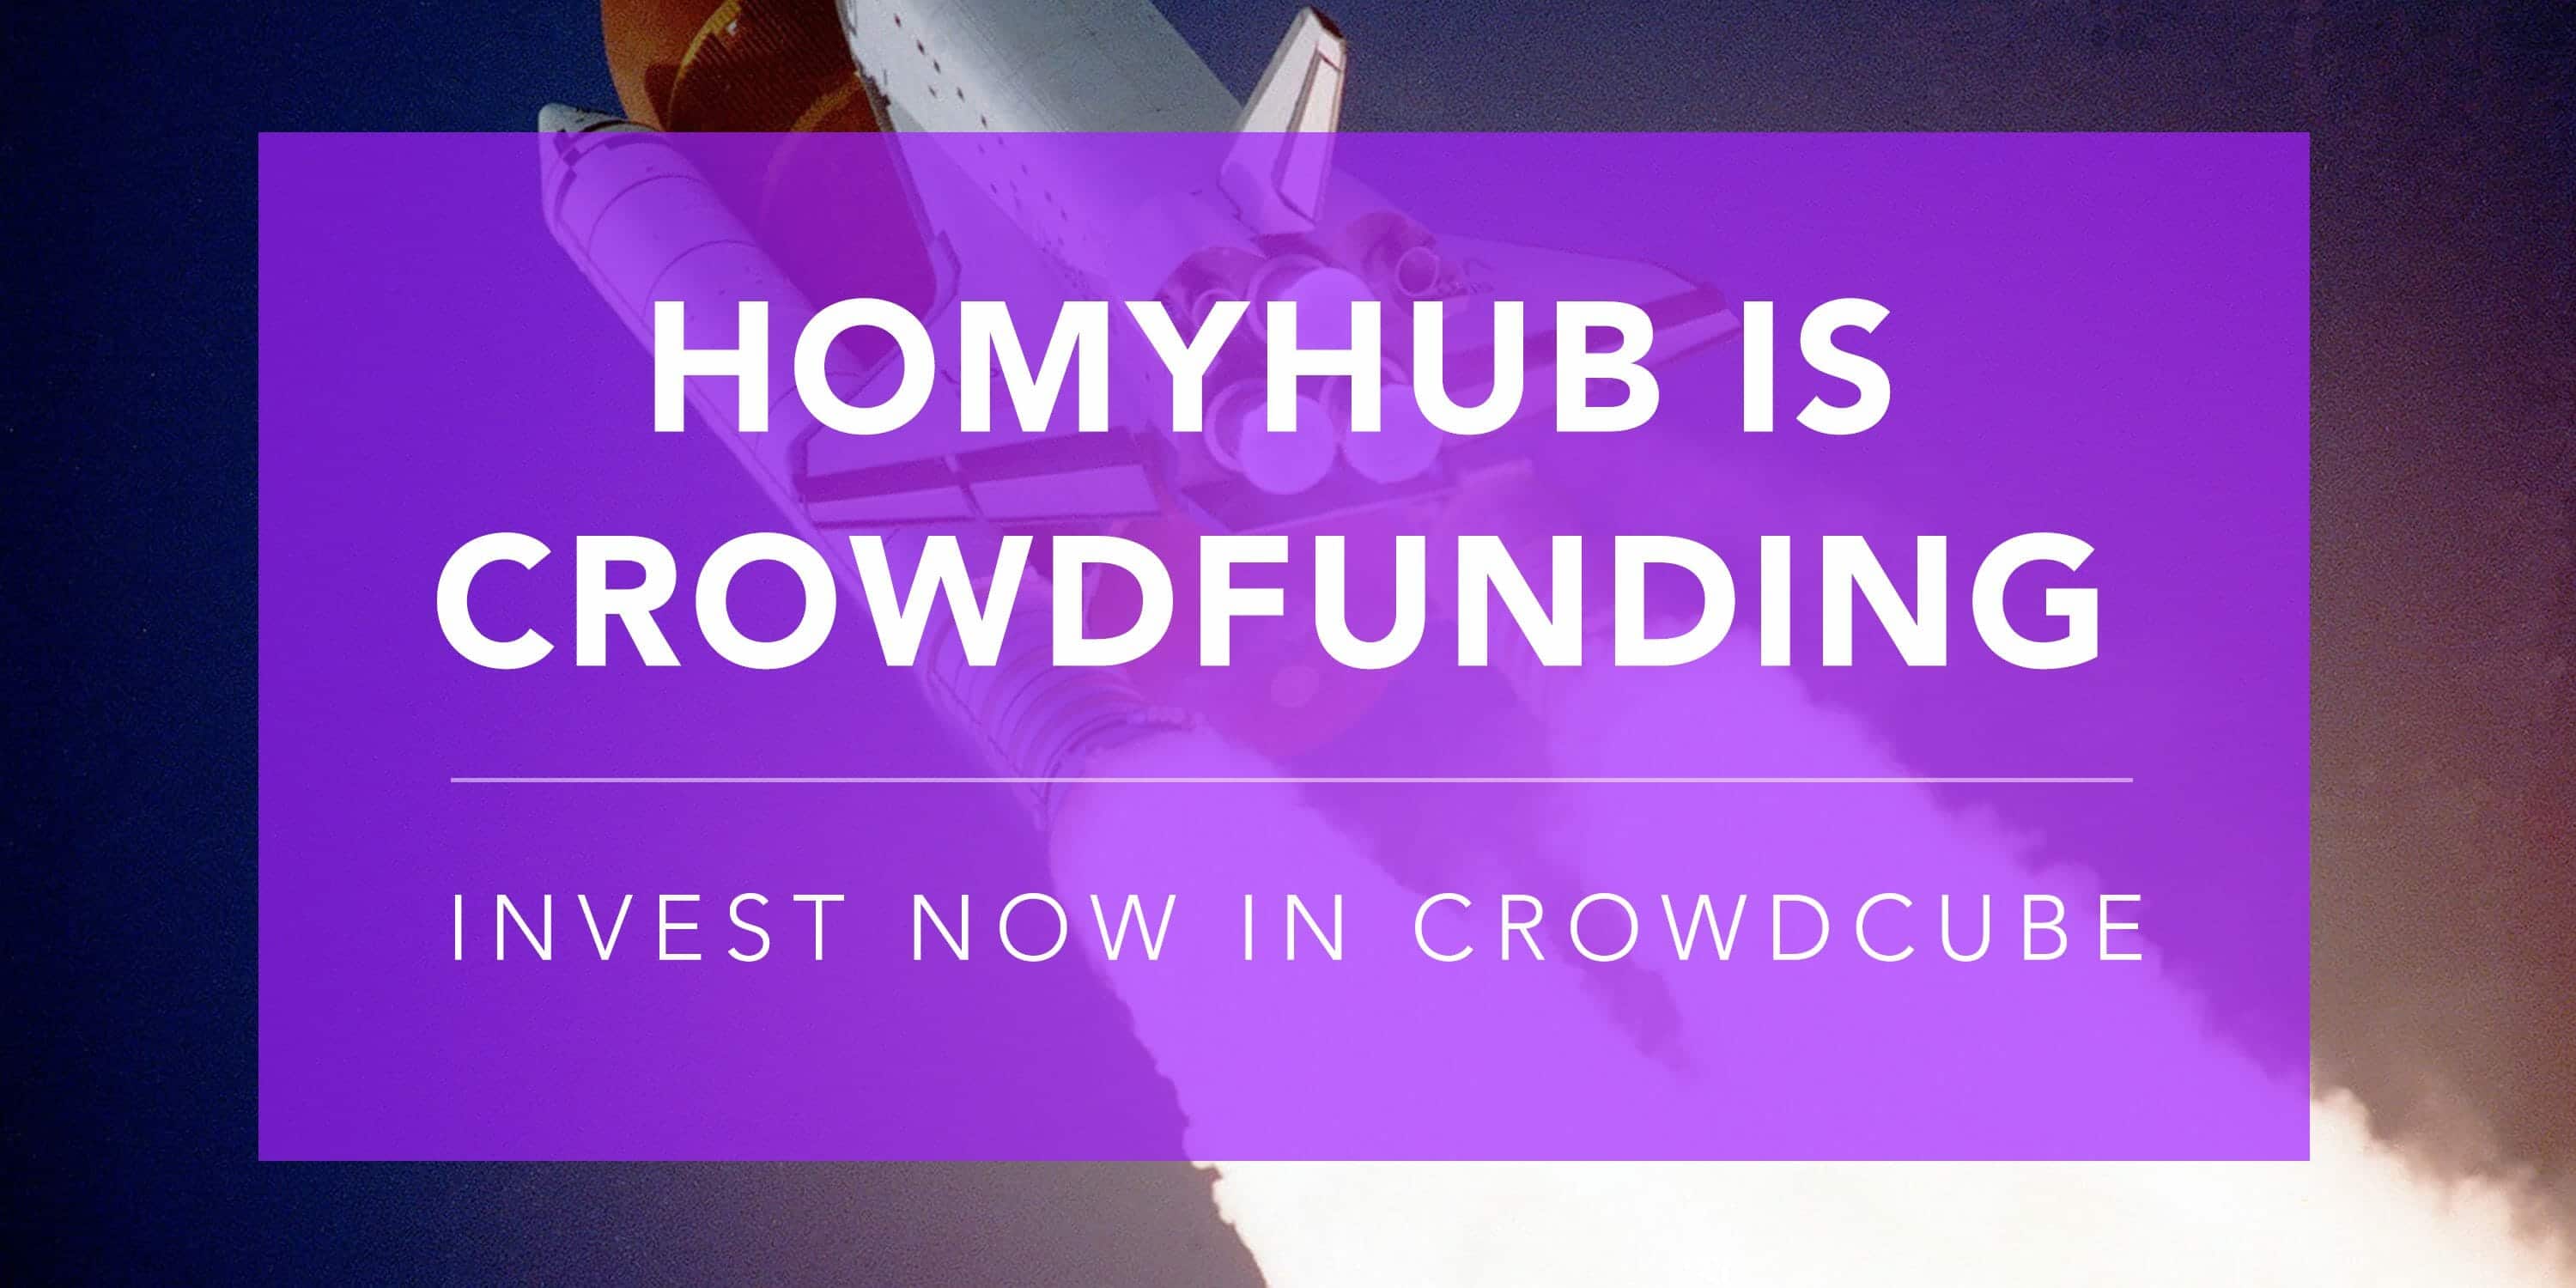 Crodwfunding Homyhub